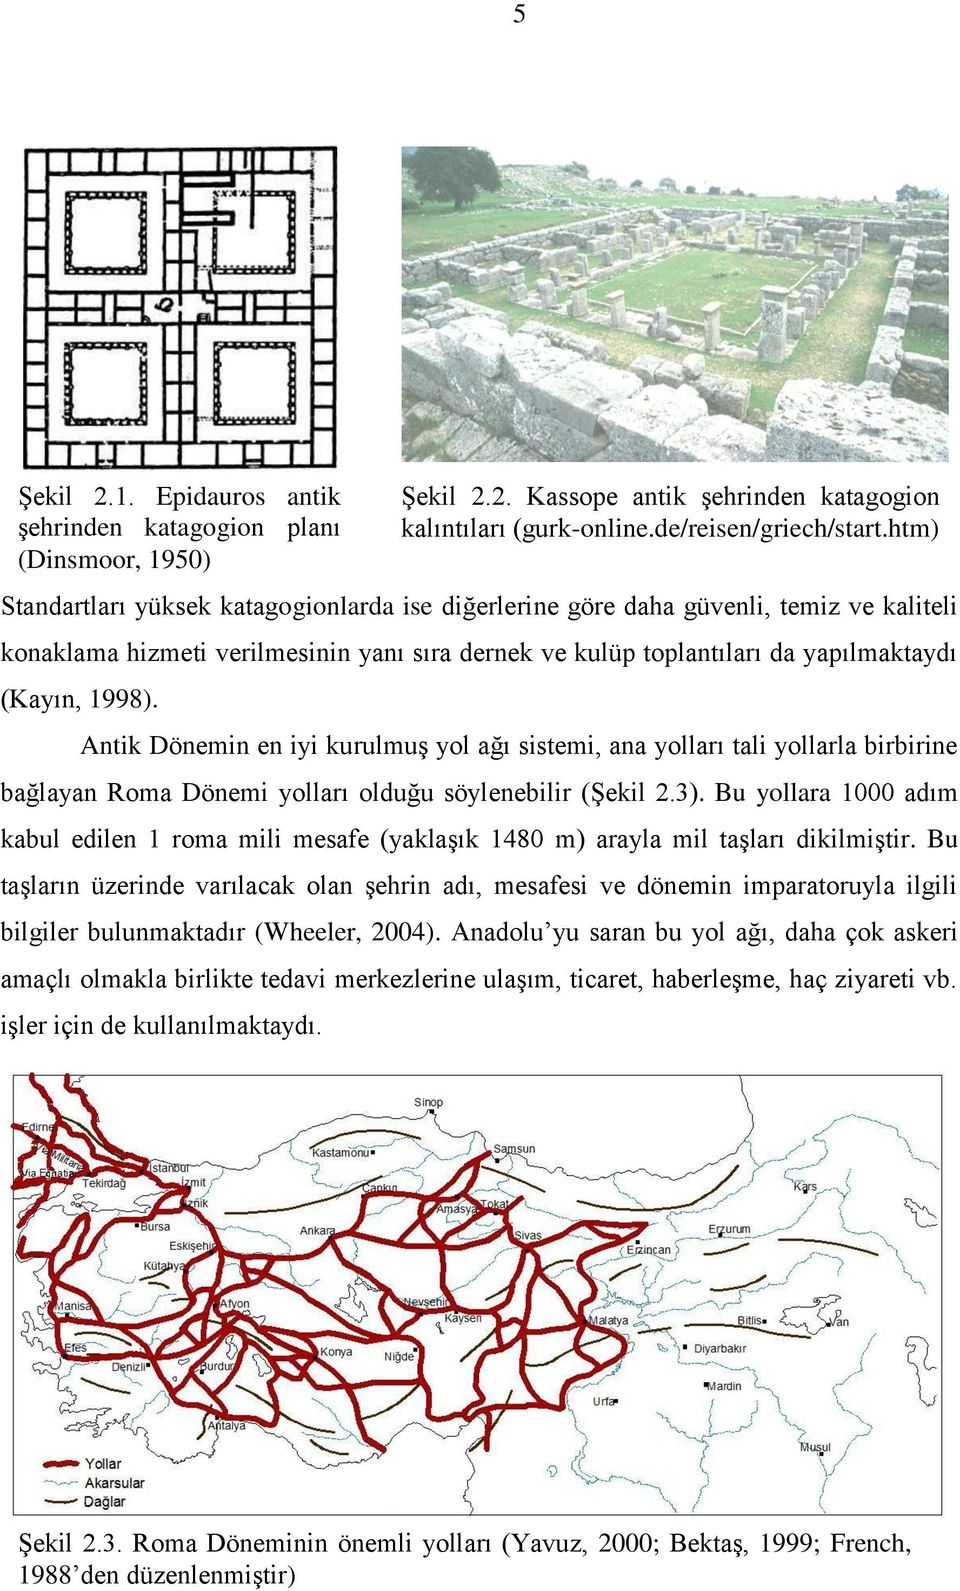 kulüp toplantıları da yapılmaktaydı (Kayın, 1998). Antik Dönemin en iyi kurulmuģ yol ağı sistemi, ana yolları tali yollarla birbirine bağlayan Roma Dönemi yolları olduğu söylenebilir (ġekil 2.3).